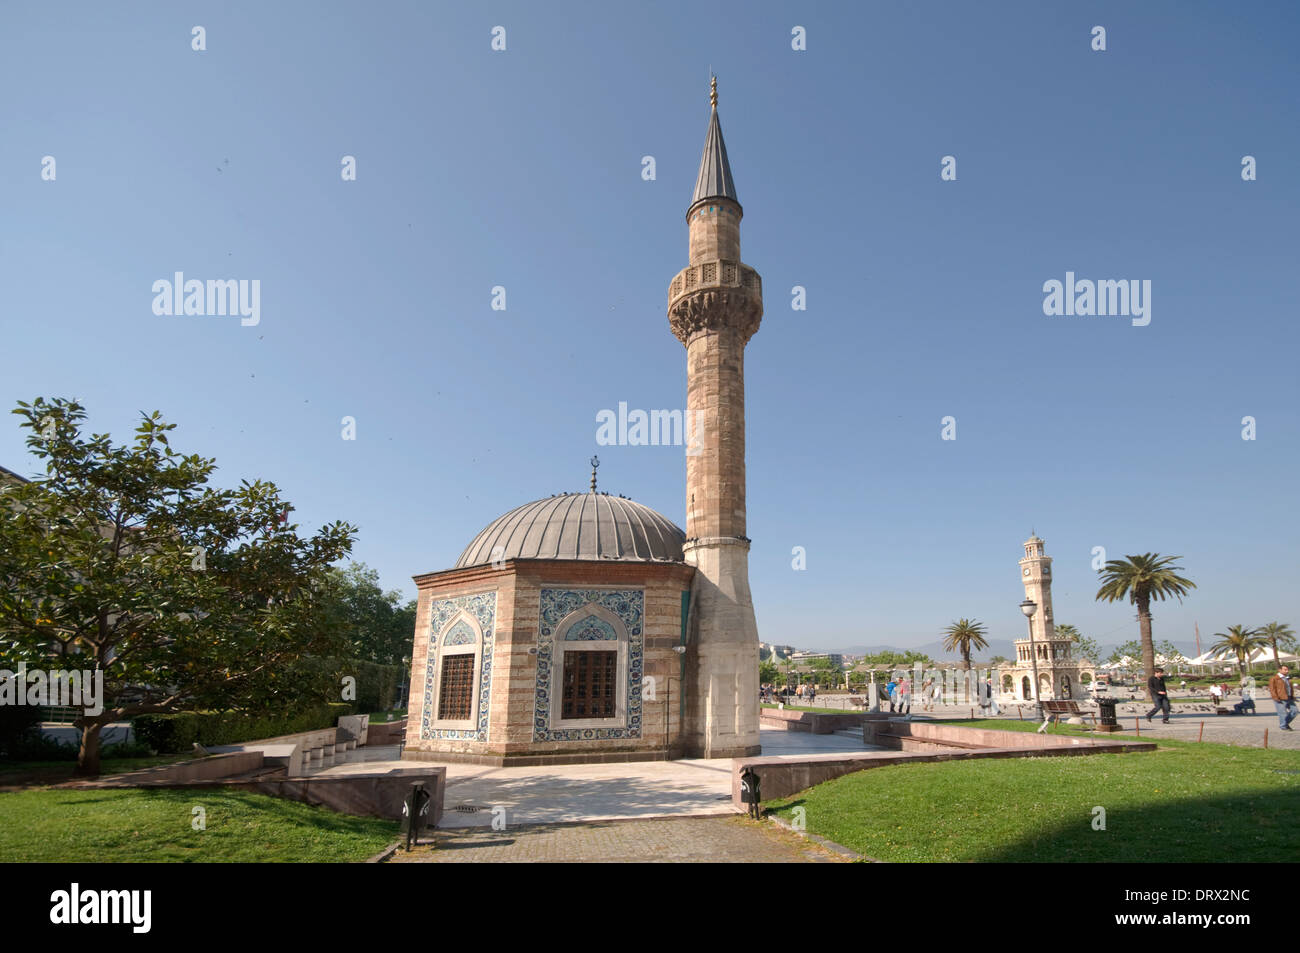 Asien, Türkei, Izmir, Konak Camii Moschee (1755), bedeckt in Kutahya (Kűtahya) Fliesen und osmanischen Uhrturm (Saat Kulesi), 1901 Stockfoto